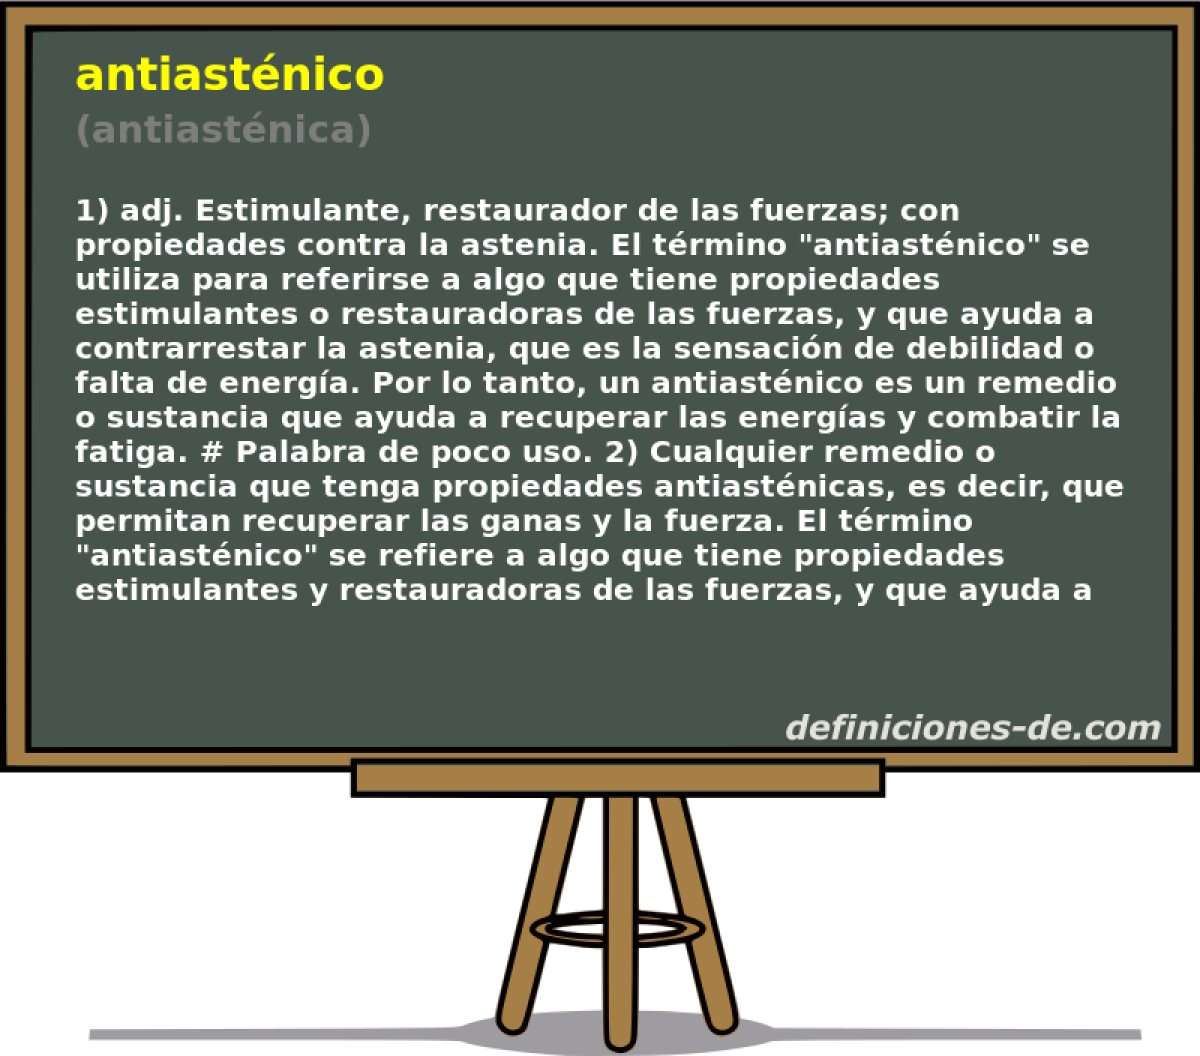 antiastnico (antiastnica)